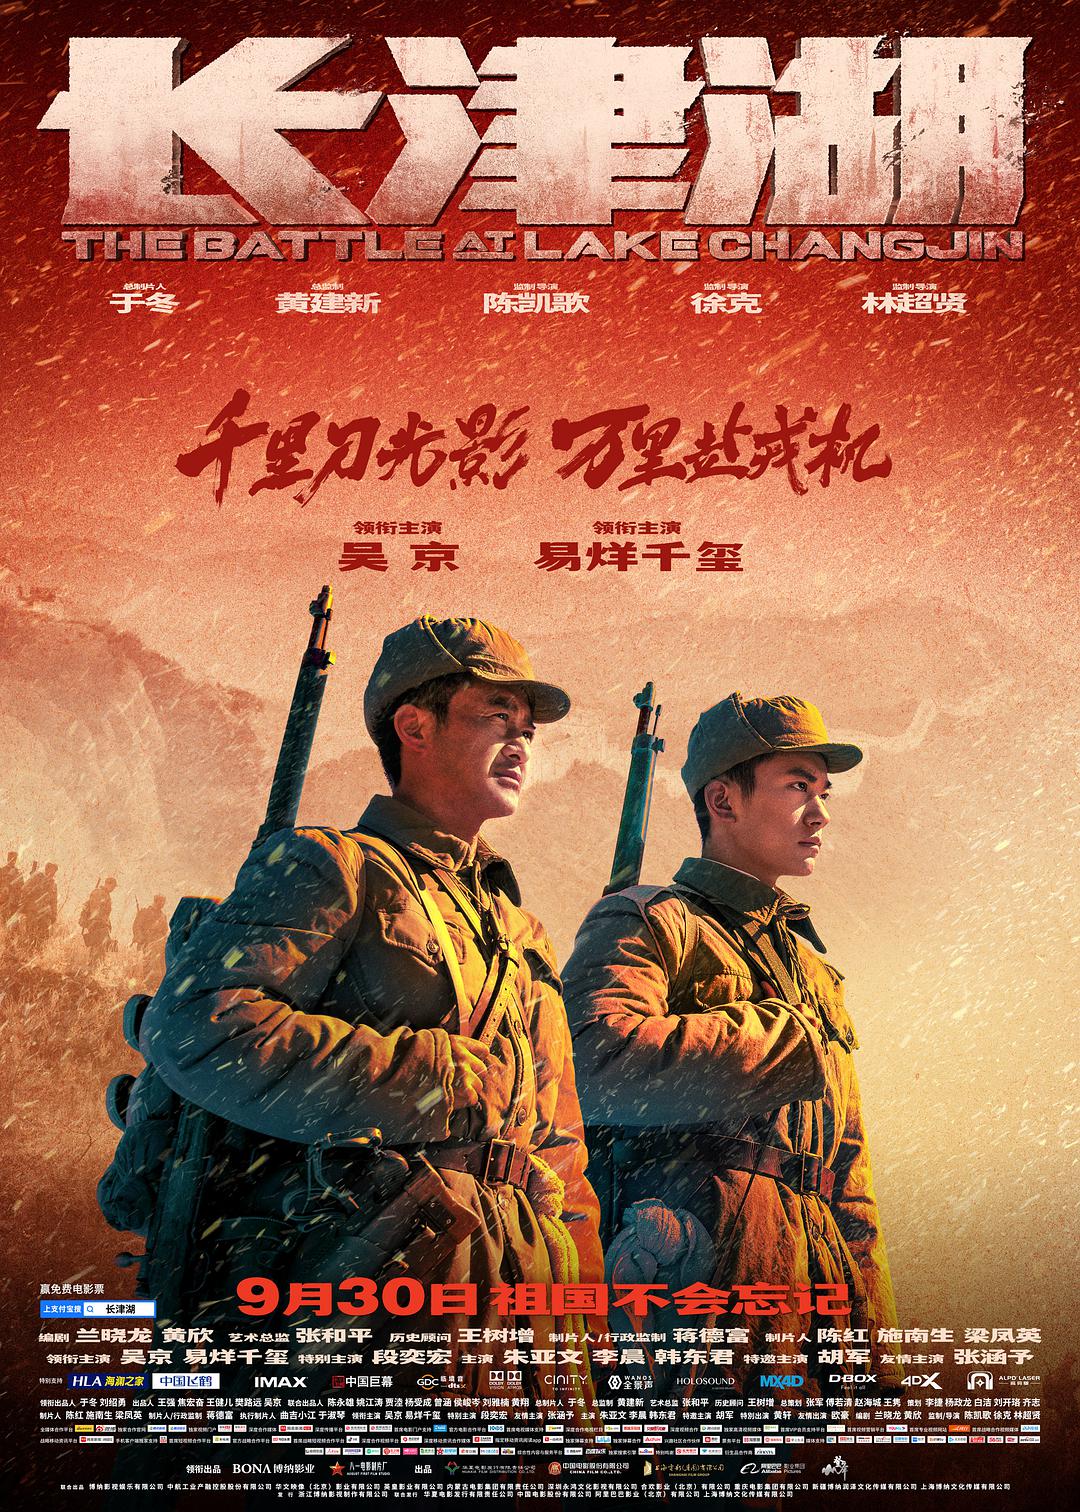 长津湖 WEB-DL版下载/The Battle at Lake Changjin / 冰雪长津湖 / 抗美援朝 / 长津湖之战 / Battle of Chosin Reservior 2021 长津湖 19.6G